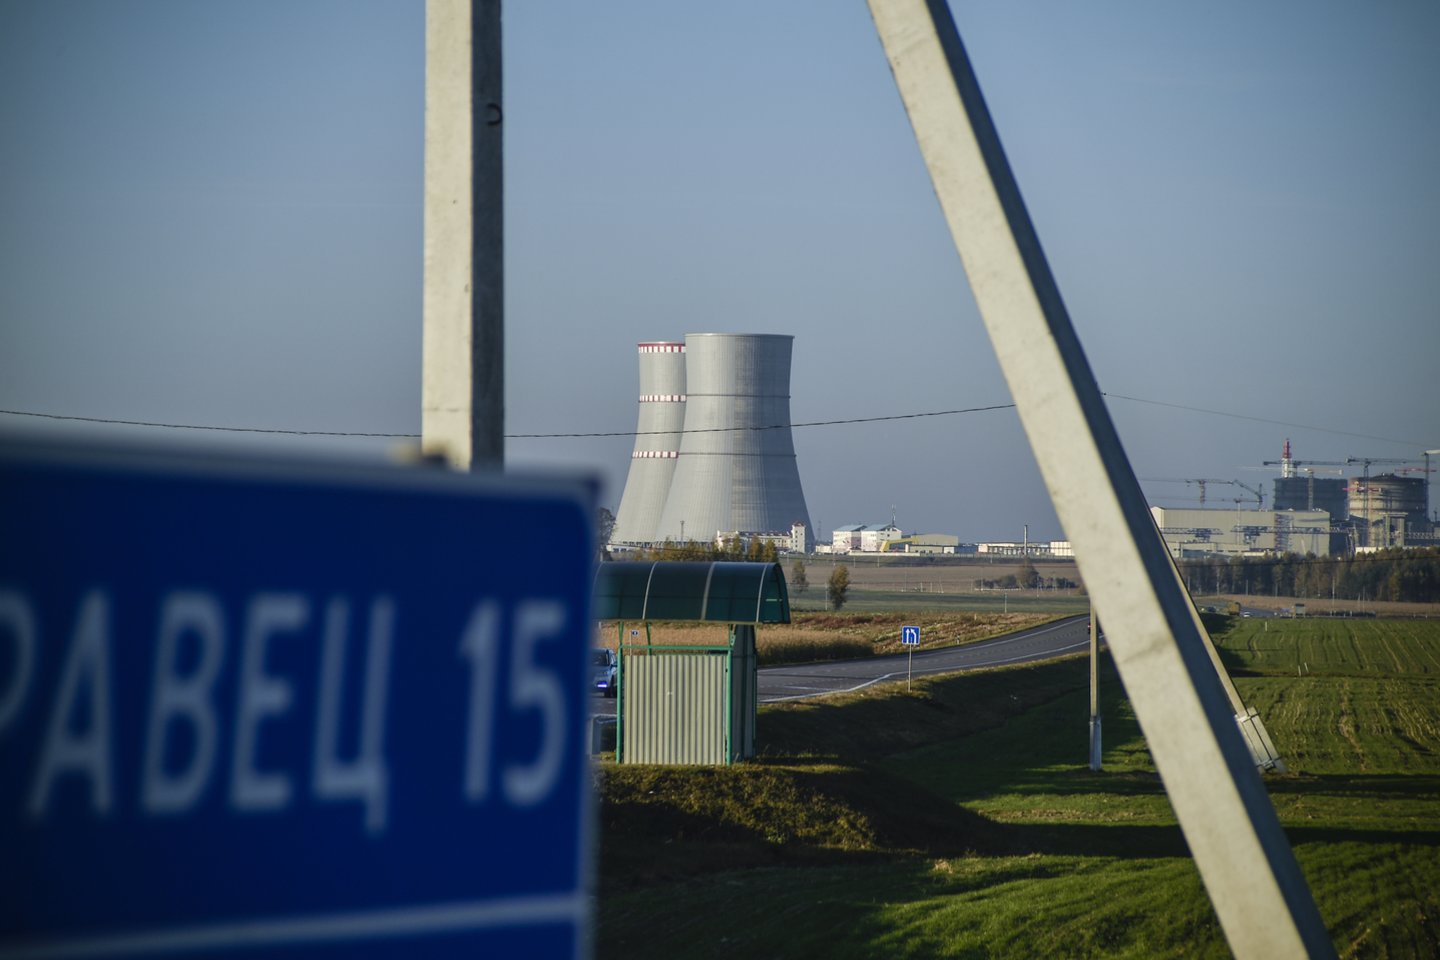 Astravo AE pirmasis energijos blokas po beveik trijų mėnesių pertraukos vėl įjungtas į šalies energetikos sistemą pramoninei elektros gamybai.<br>V.Ščiavinsko nuotr.